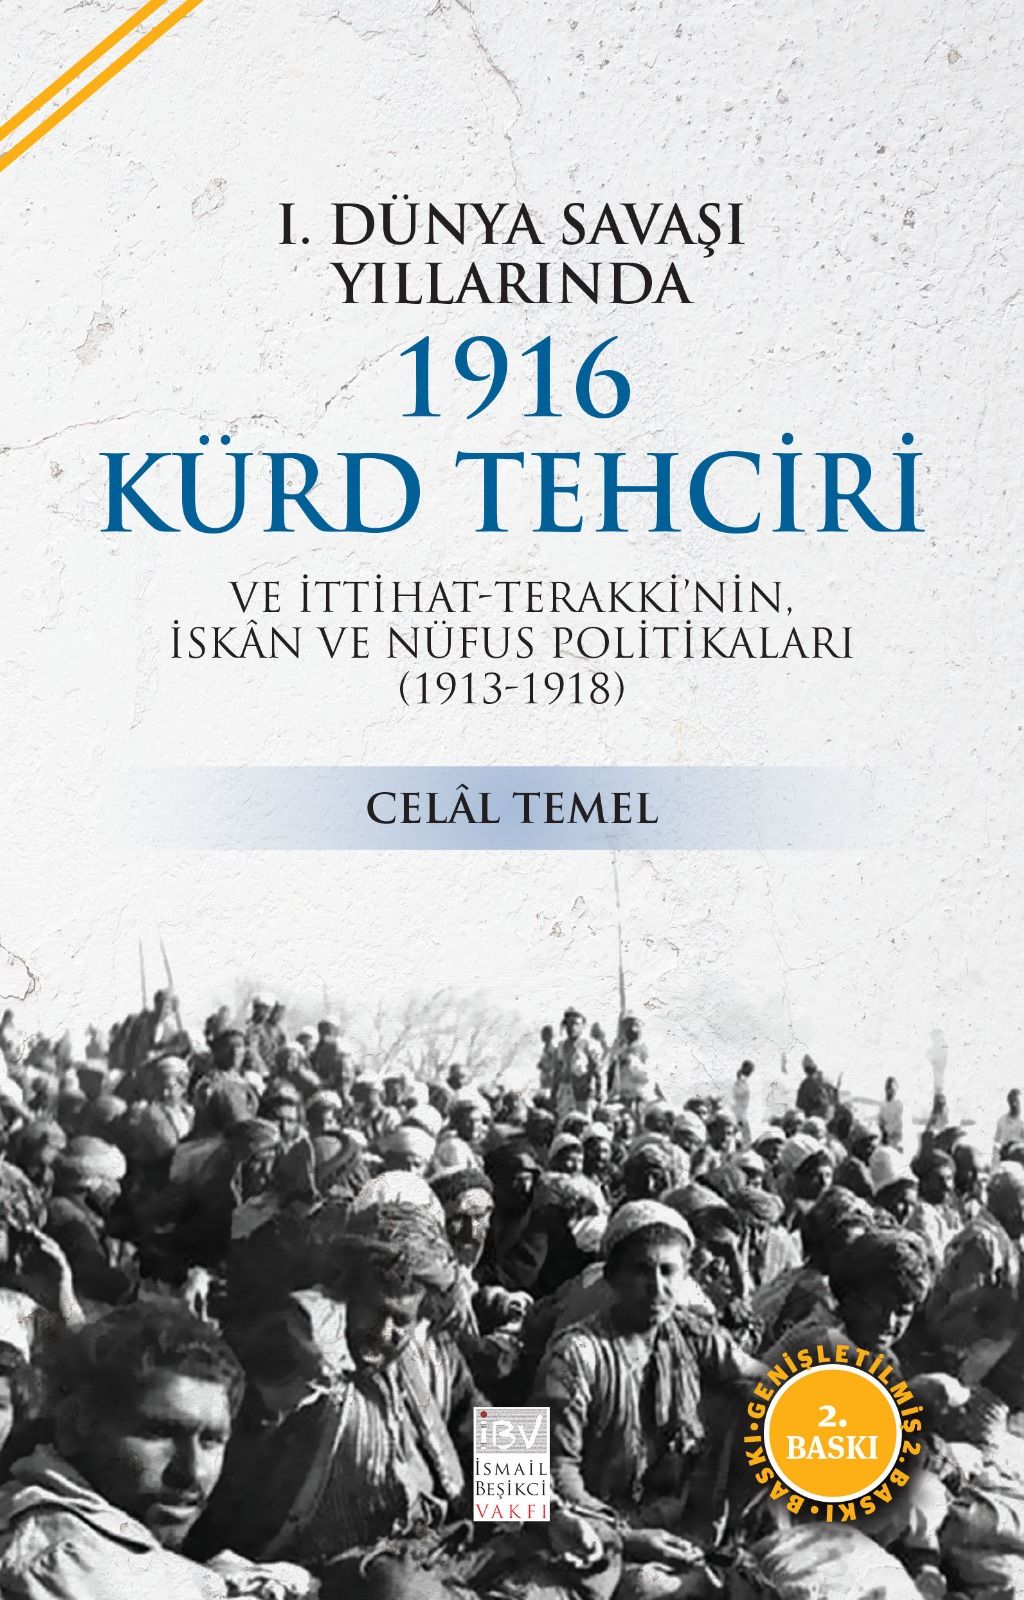 1. Dünya Savaşı Yıllarında 1916 Kürd Tehciri